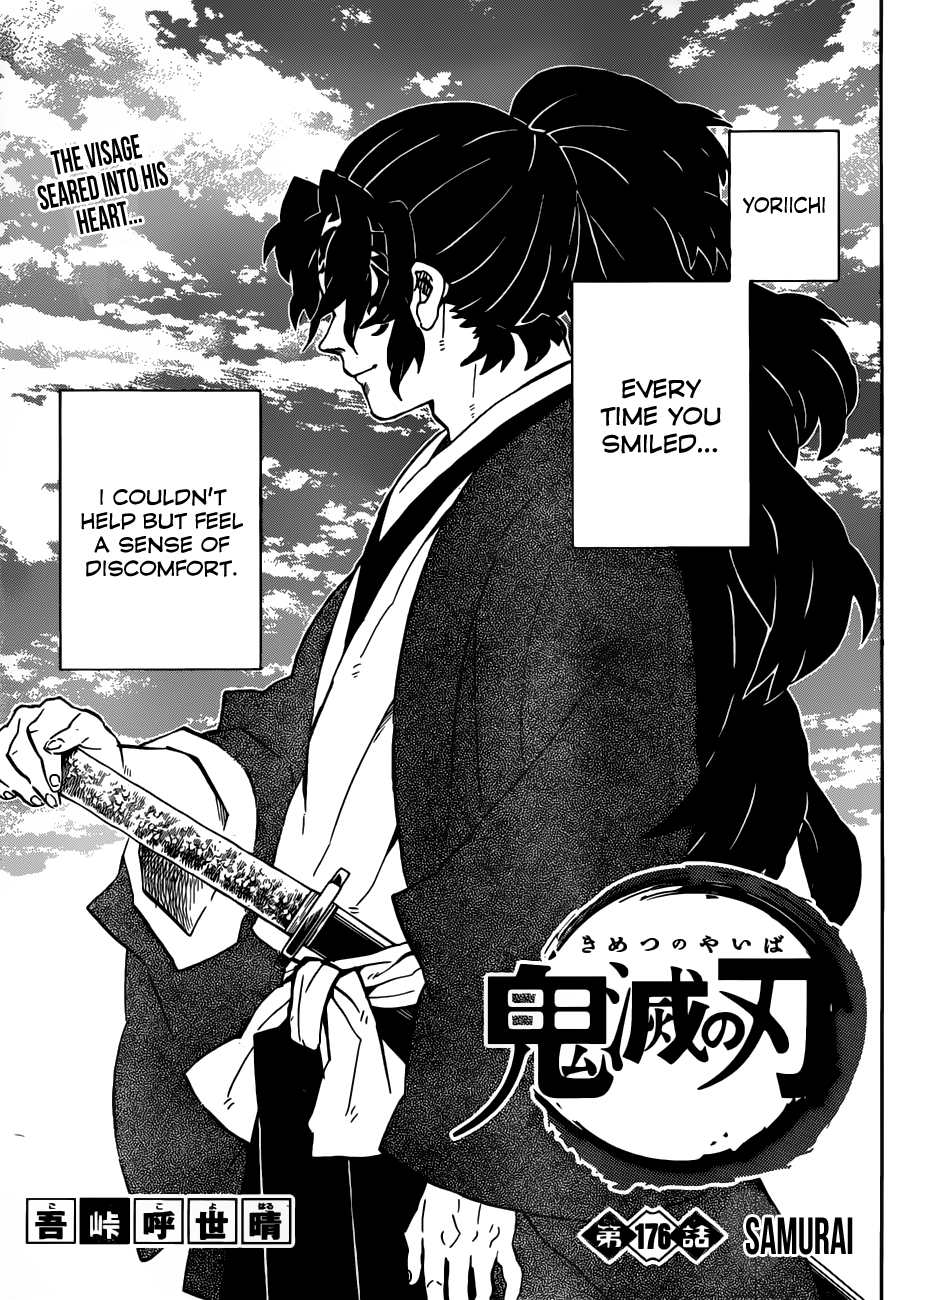 demon slayer kimetsu no yaiba chapter 176 samurai 1 - Demon Slayer: Kimetsu no Yaiba, Chapter 176: Samurai